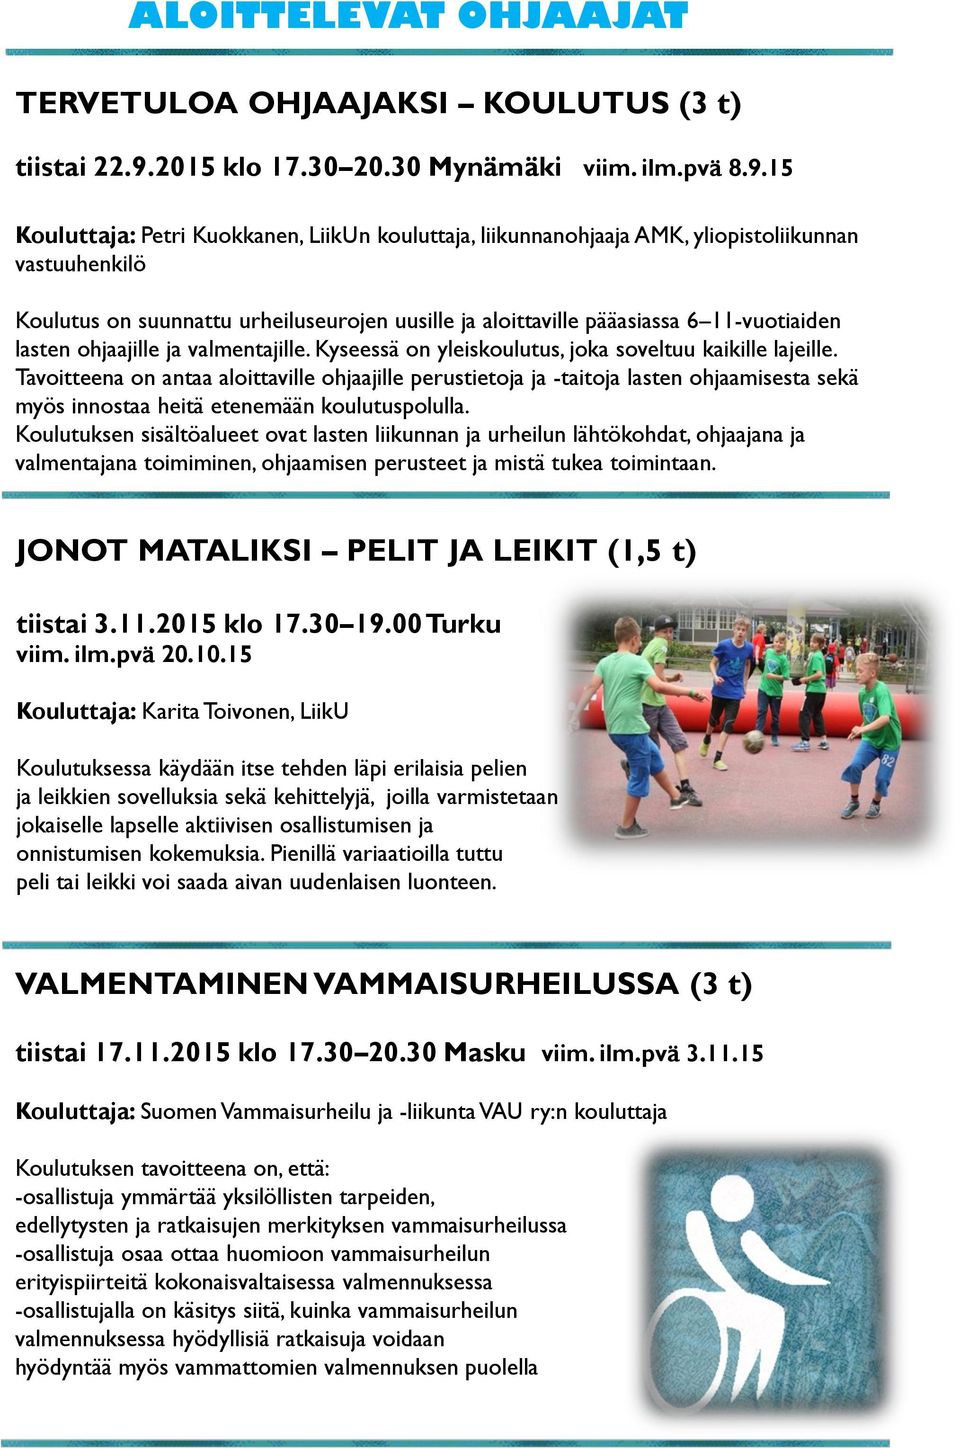 15 Kouluttaja: Petri Kuokkanen, LiikUn kouluttaja, liikunnanohjaaja AMK, yliopistoliikunnan vastuuhenkilö Koulutus on suunnattu urheiluseurojen uusille ja aloittaville pääasiassa 6 11-vuotiaiden